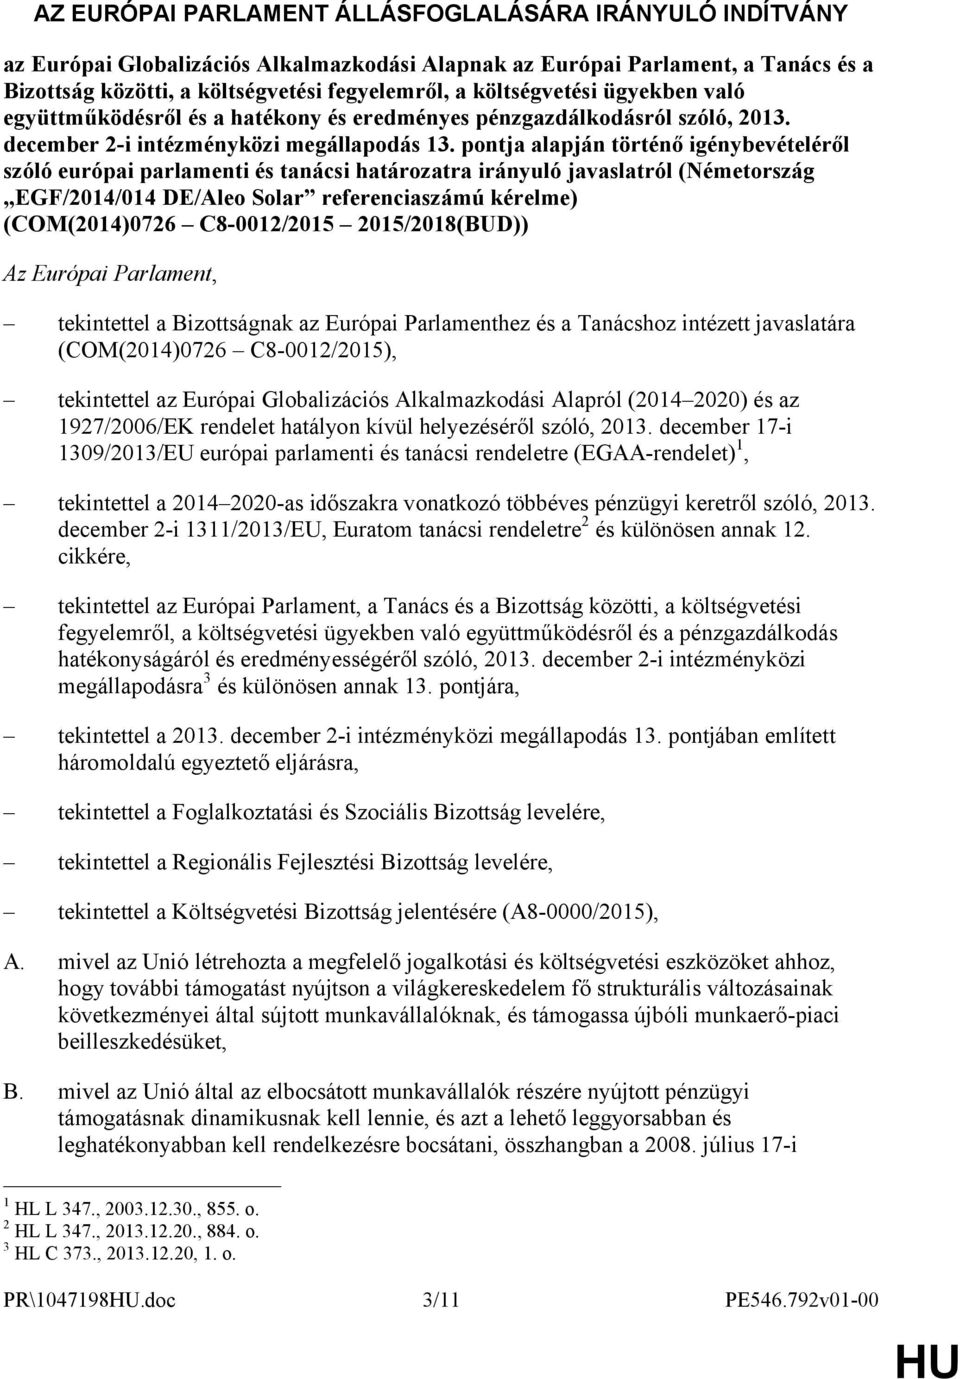 pontja alapján történő igénybevételéről szóló európai parlamenti és tanácsi határozatra irányuló javaslatról (Németország EGF/2014/014 DE/Aleo Solar referenciaszámú kérelme) (COM(2014)0726